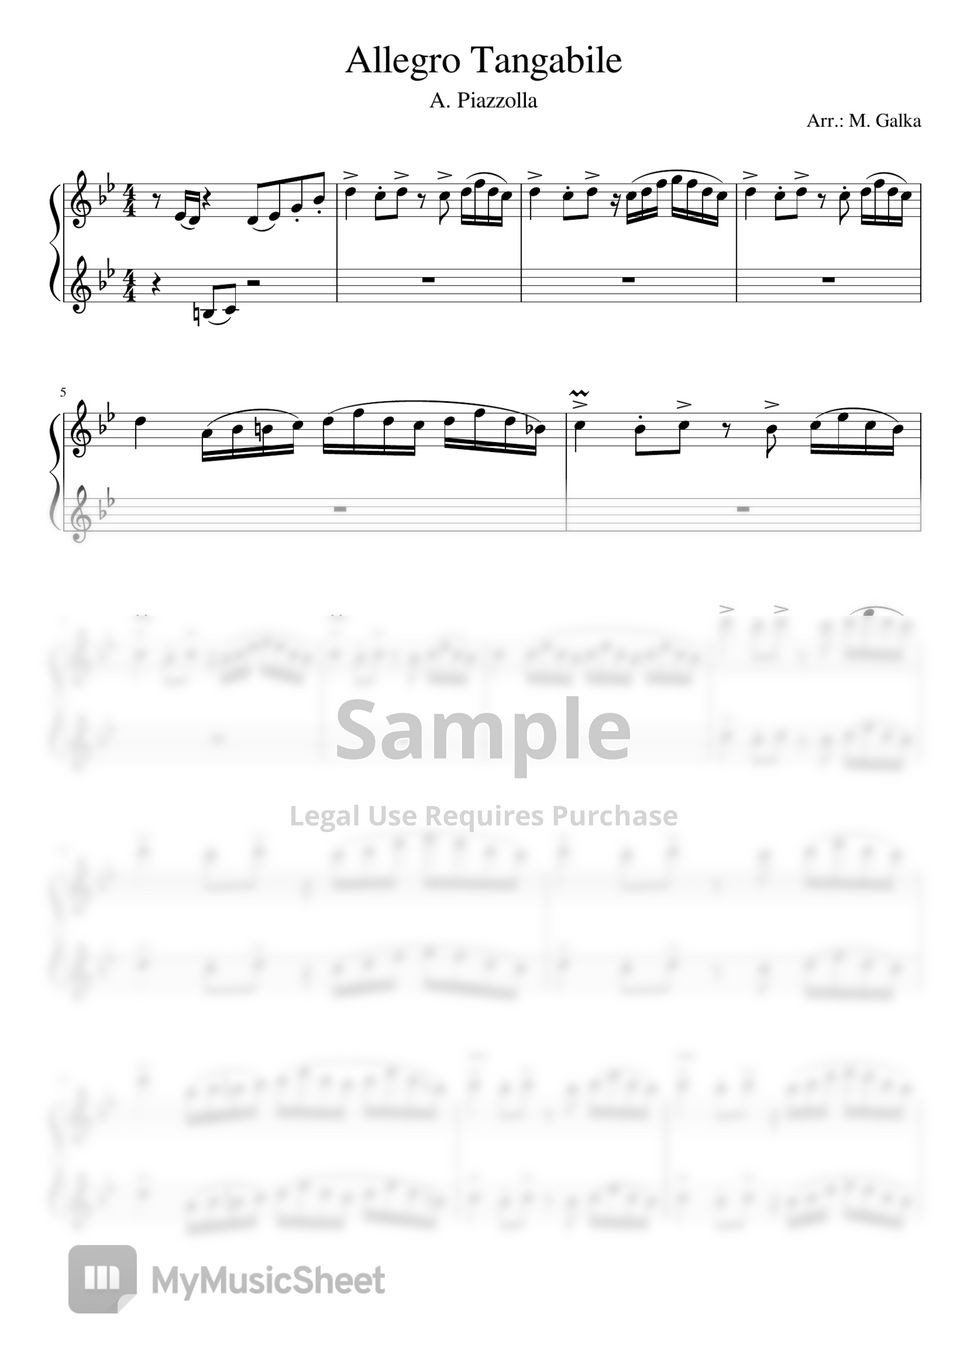 아스토르 피아졸라 (Astor Piazzolla) - 알레그로 탄가 빌레 (Allegro tangabile) 피아노포핸즈 (Piano 4 hands) by Magdalena Galka